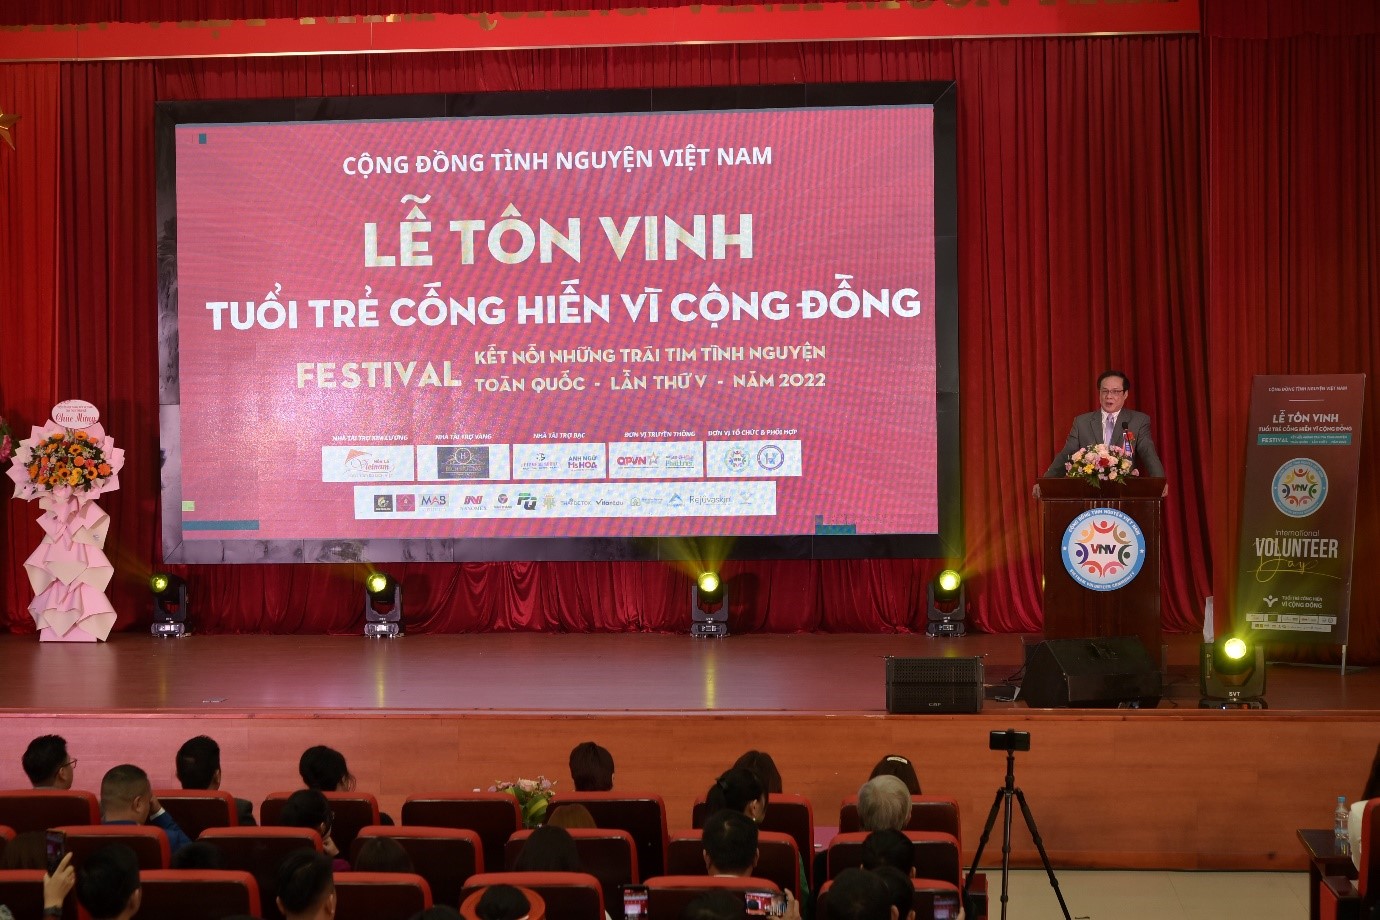 NSƯT Hồ Phong và nghệ sĩ Quách Thu Phương làm đại sứ nhân ái Lễ tôn vinh "Tuổi trẻ cống hiến vì cộng đồng" 2022 - 3